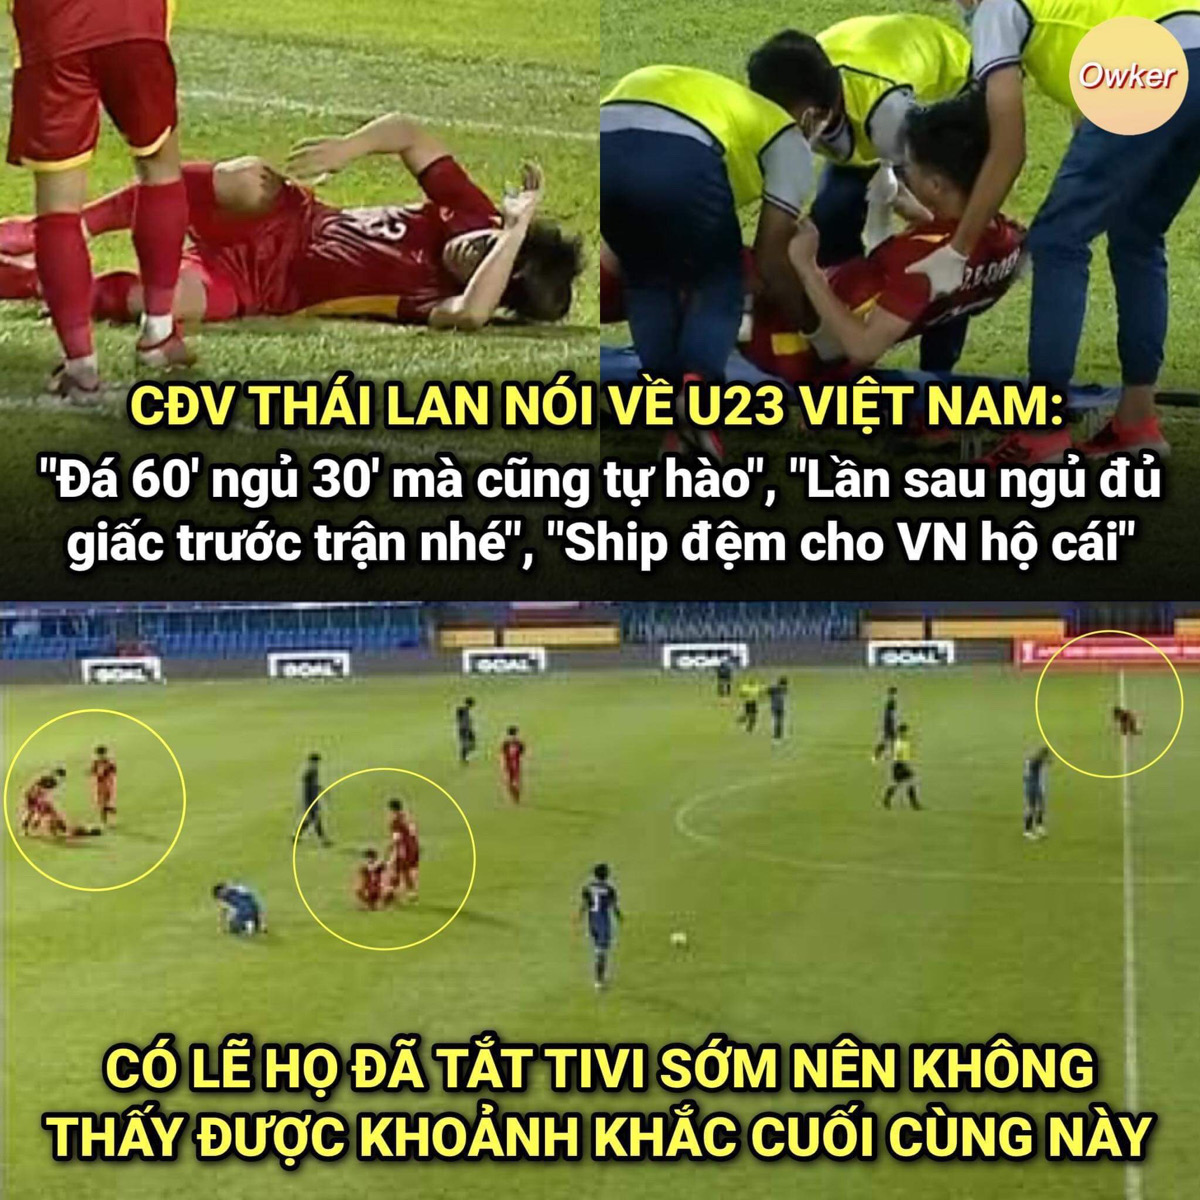 Hình ảnh cho thấy các cầu thủ U23 Việt Nam đổ gục sau khi trận đấu kết thúc. Nguồn: Owker